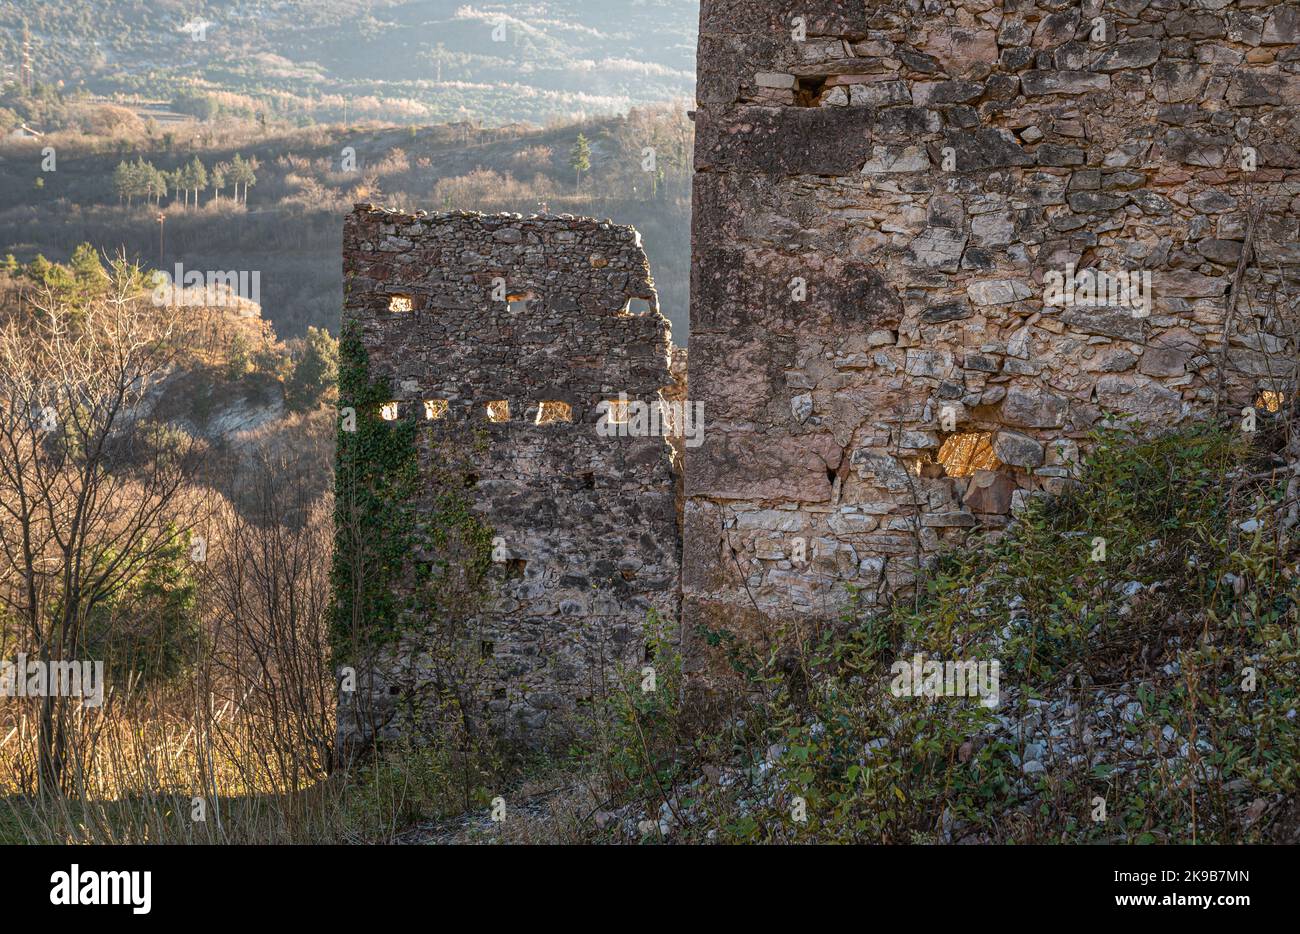 Ruderi di un antico insediamento medievale lungo il sentiero naturalistico Roggia di Cavedine - provincia di Trento, Trentino Alto Abuge - Italia settentrionale Foto Stock